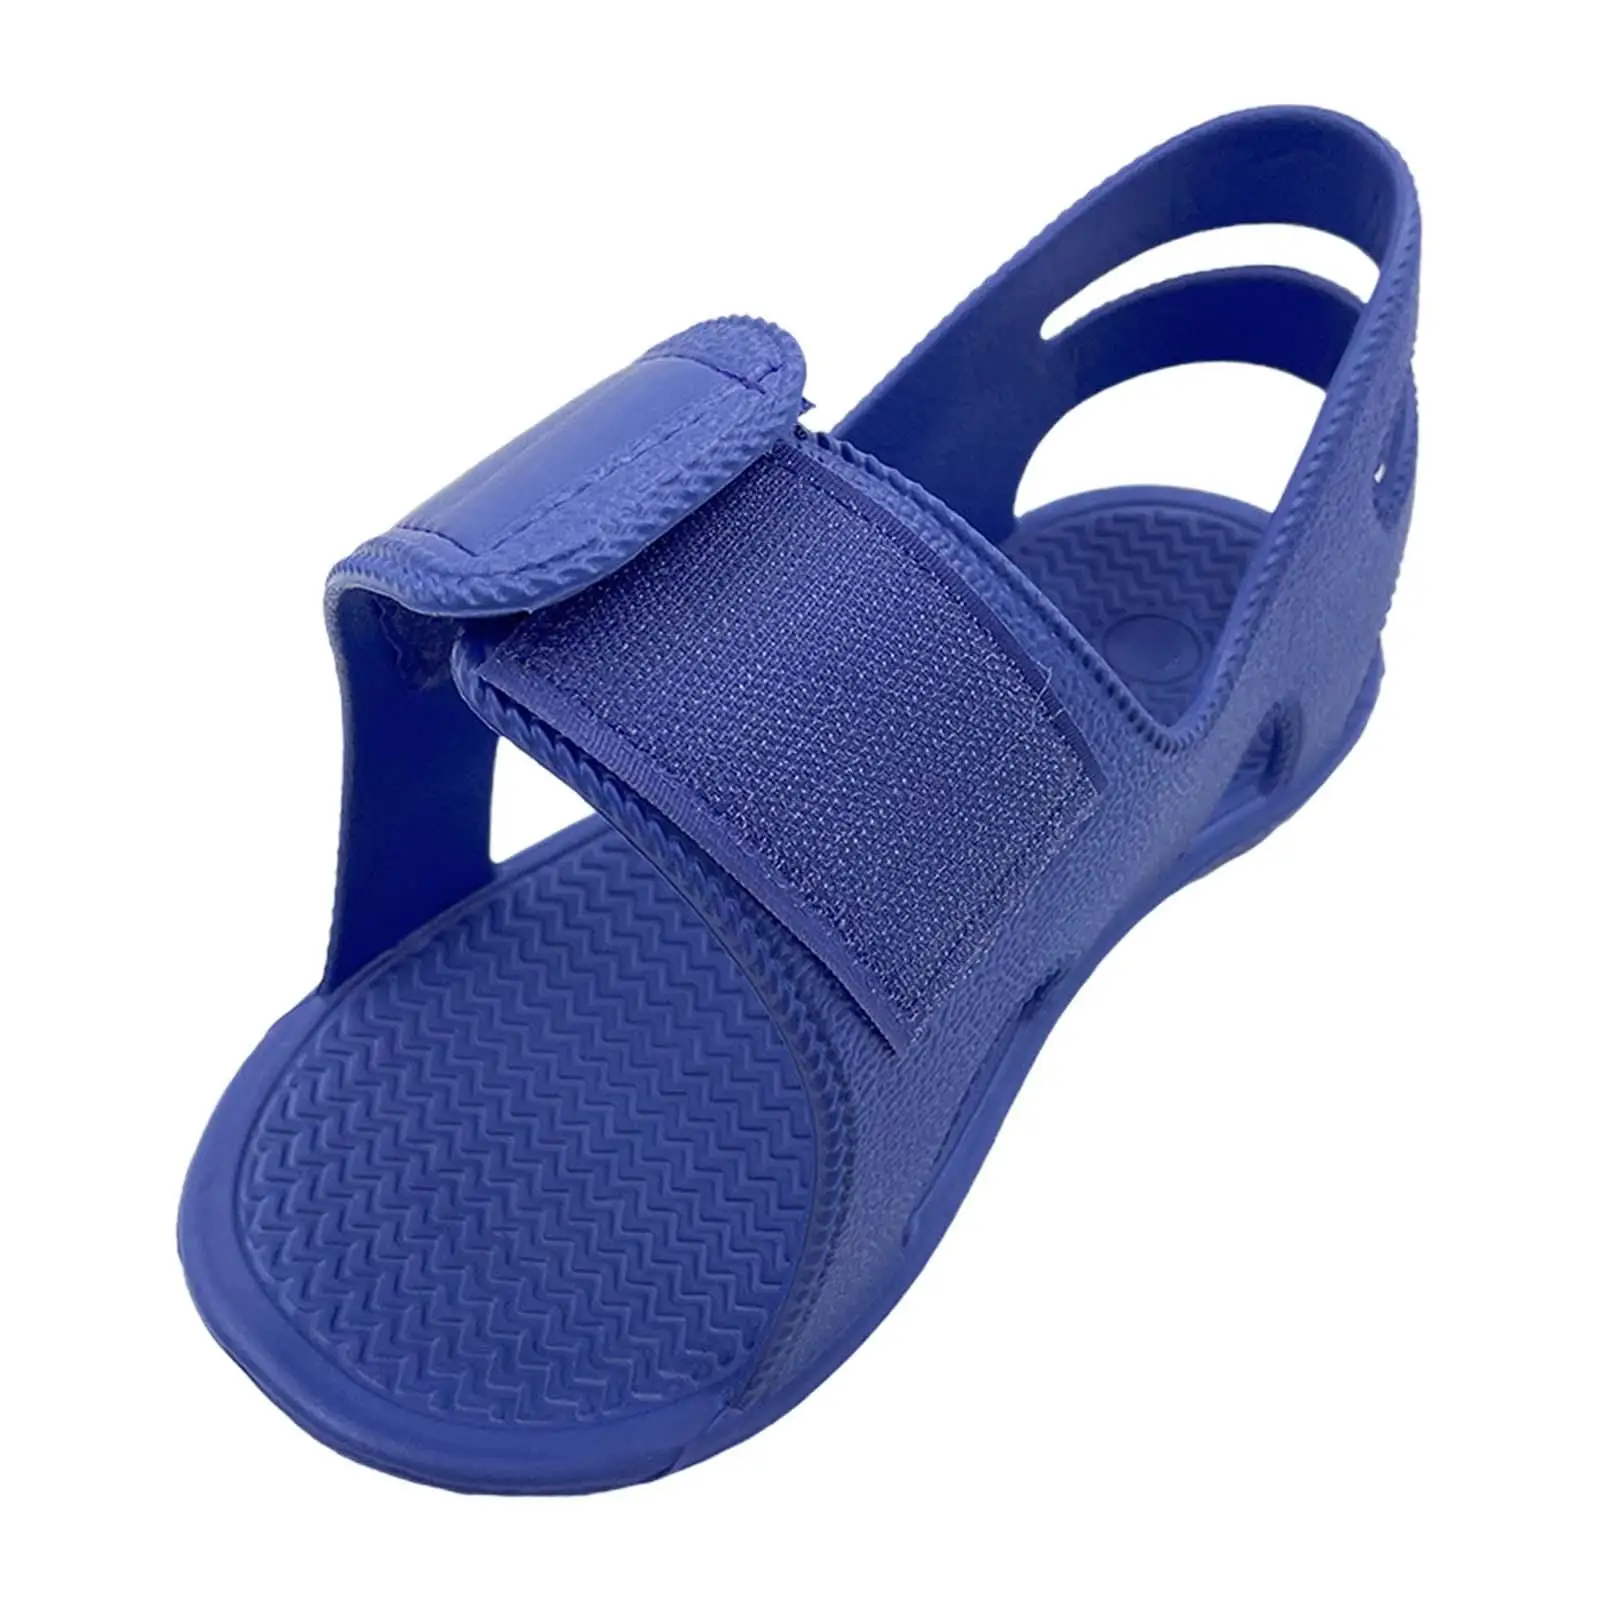 Post OP Shoe Stable Ankle Joints Wide Open Toe Wear Resistant Anti Slip Waterproof Soft Gypsum Shoe Cast Shoe Plaster Cast Boot